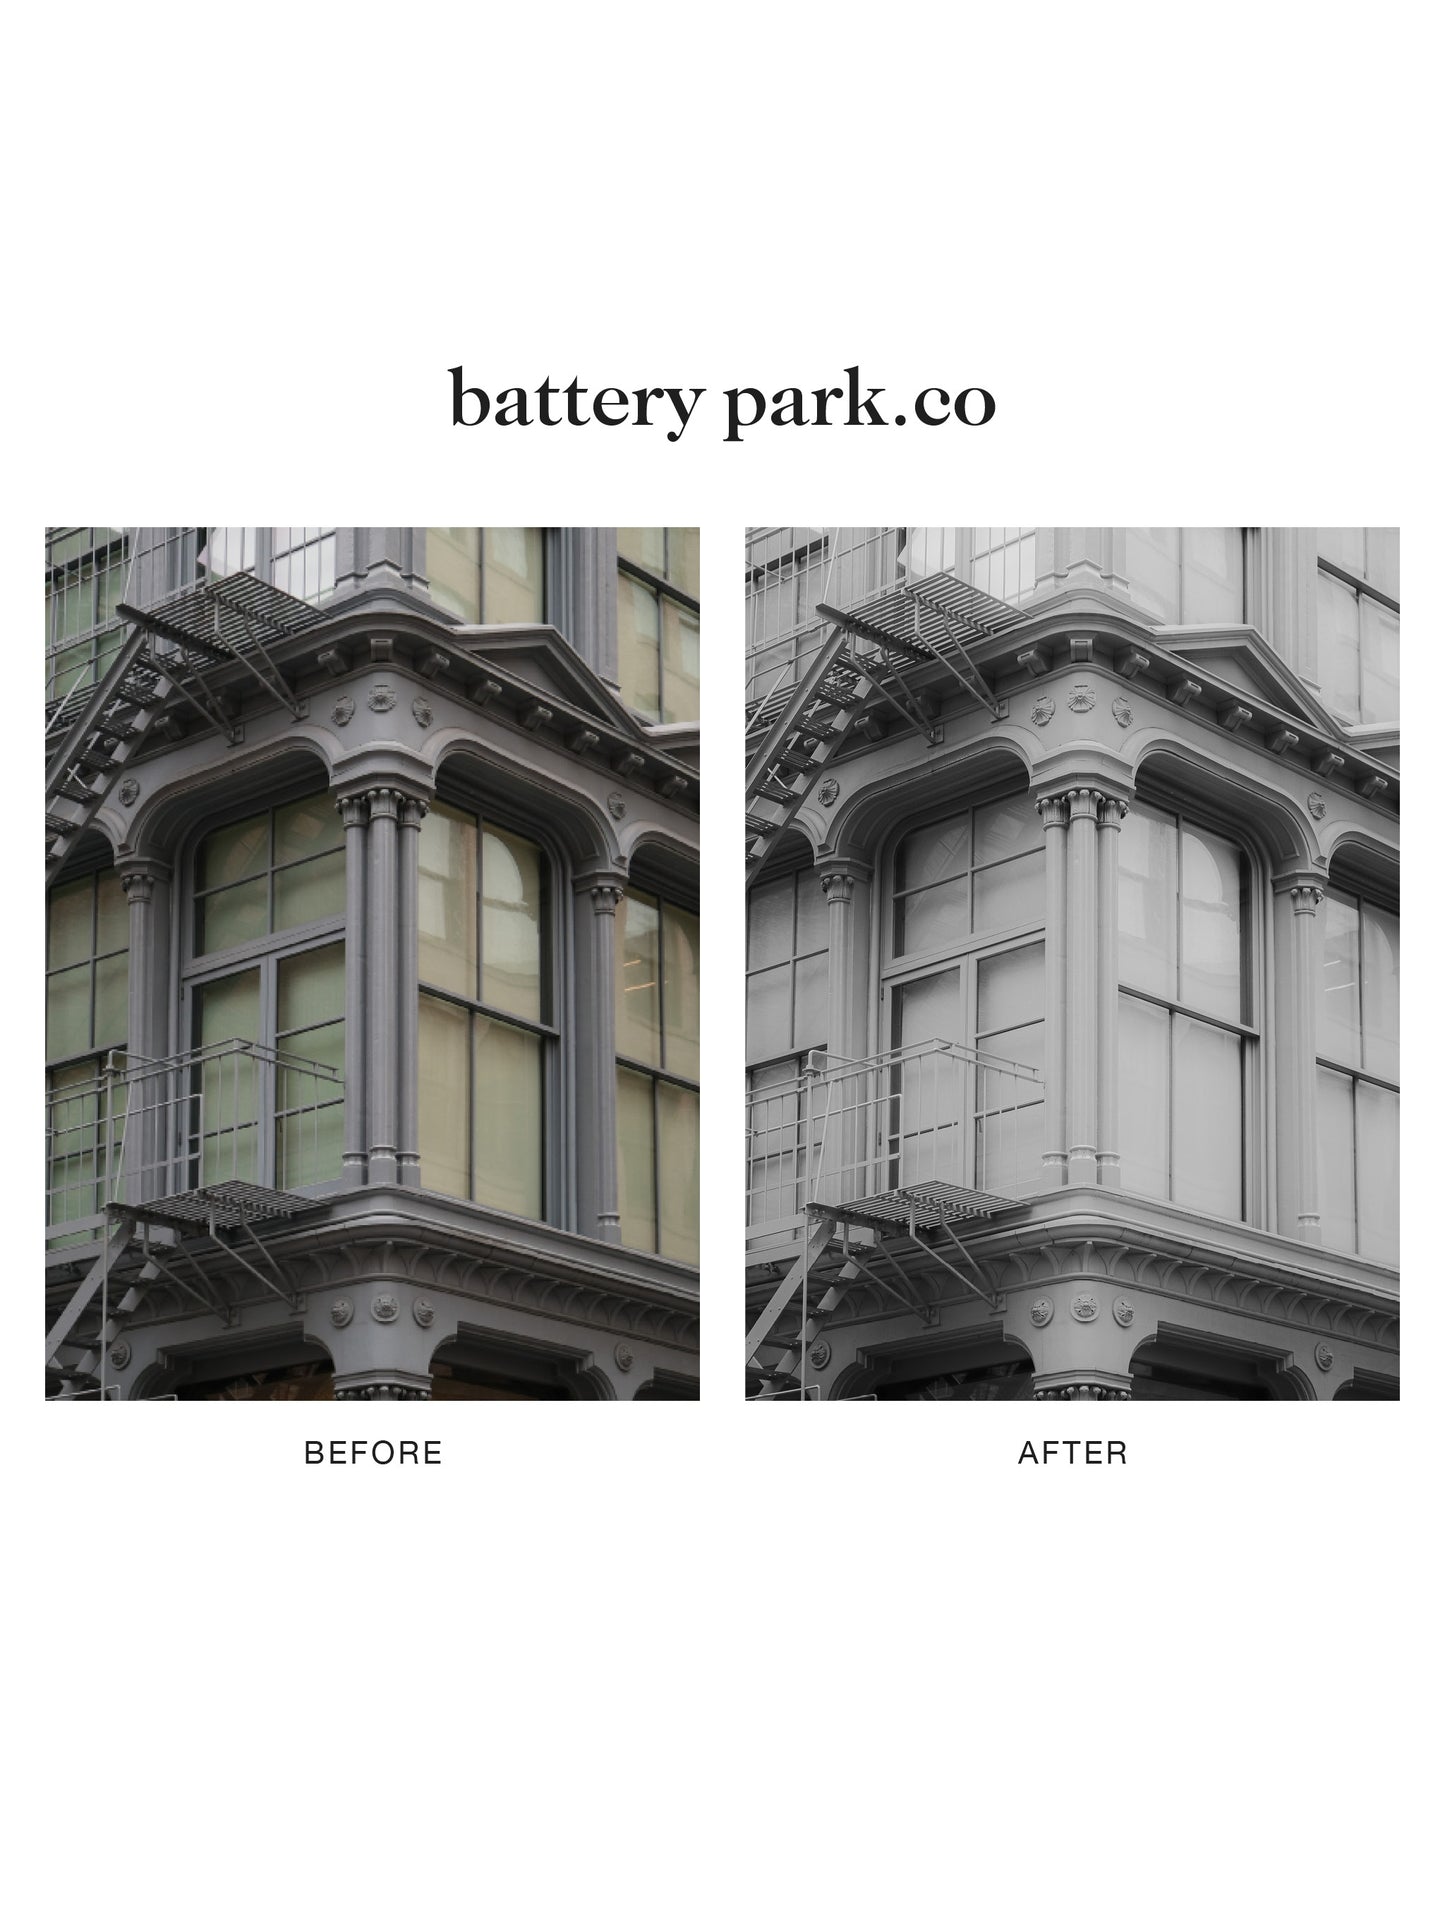 "battery park.co" Lightroom Preset